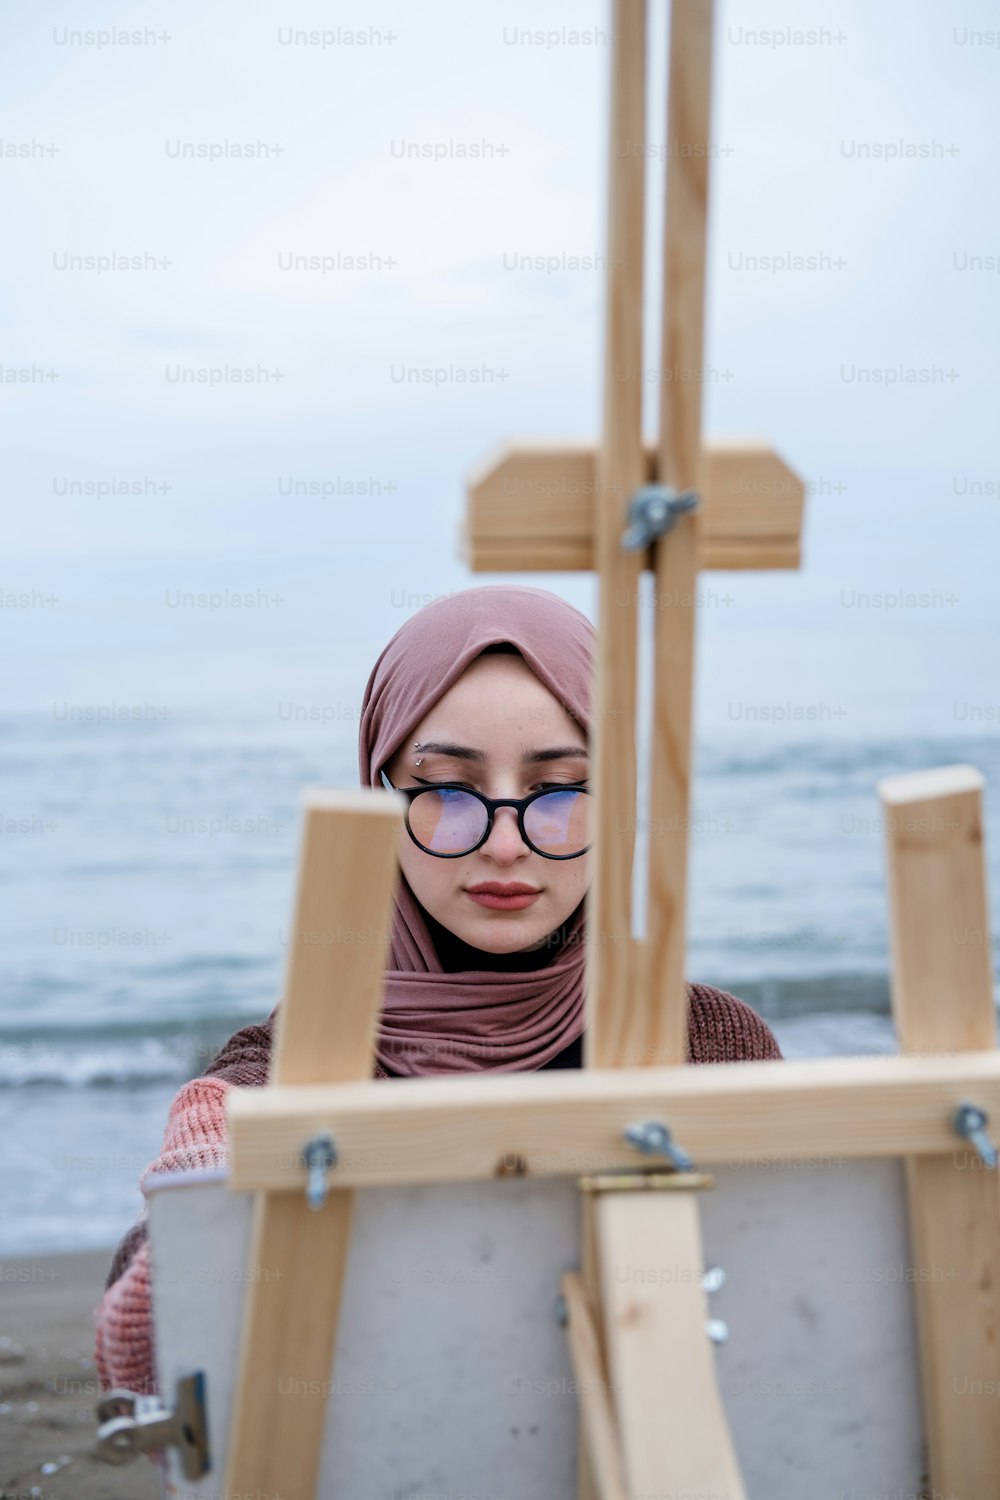 Una mujer con gafas y un hijab está mirando un caballete de pintura